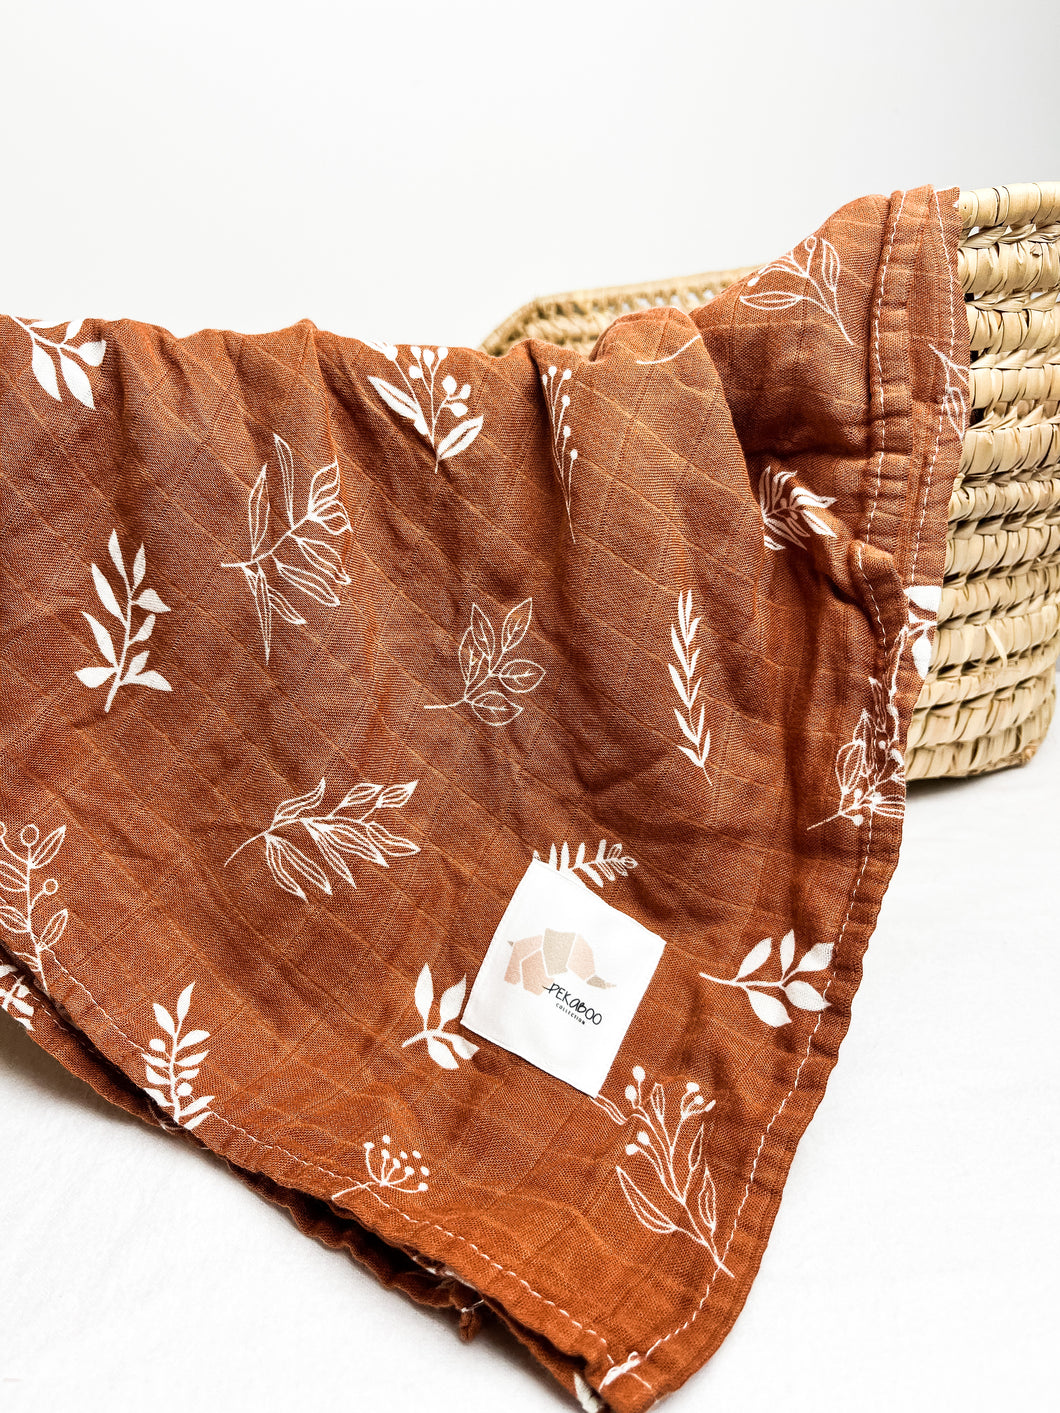 Couverture mousseline de bambou-Brun rouille feuilles blanches